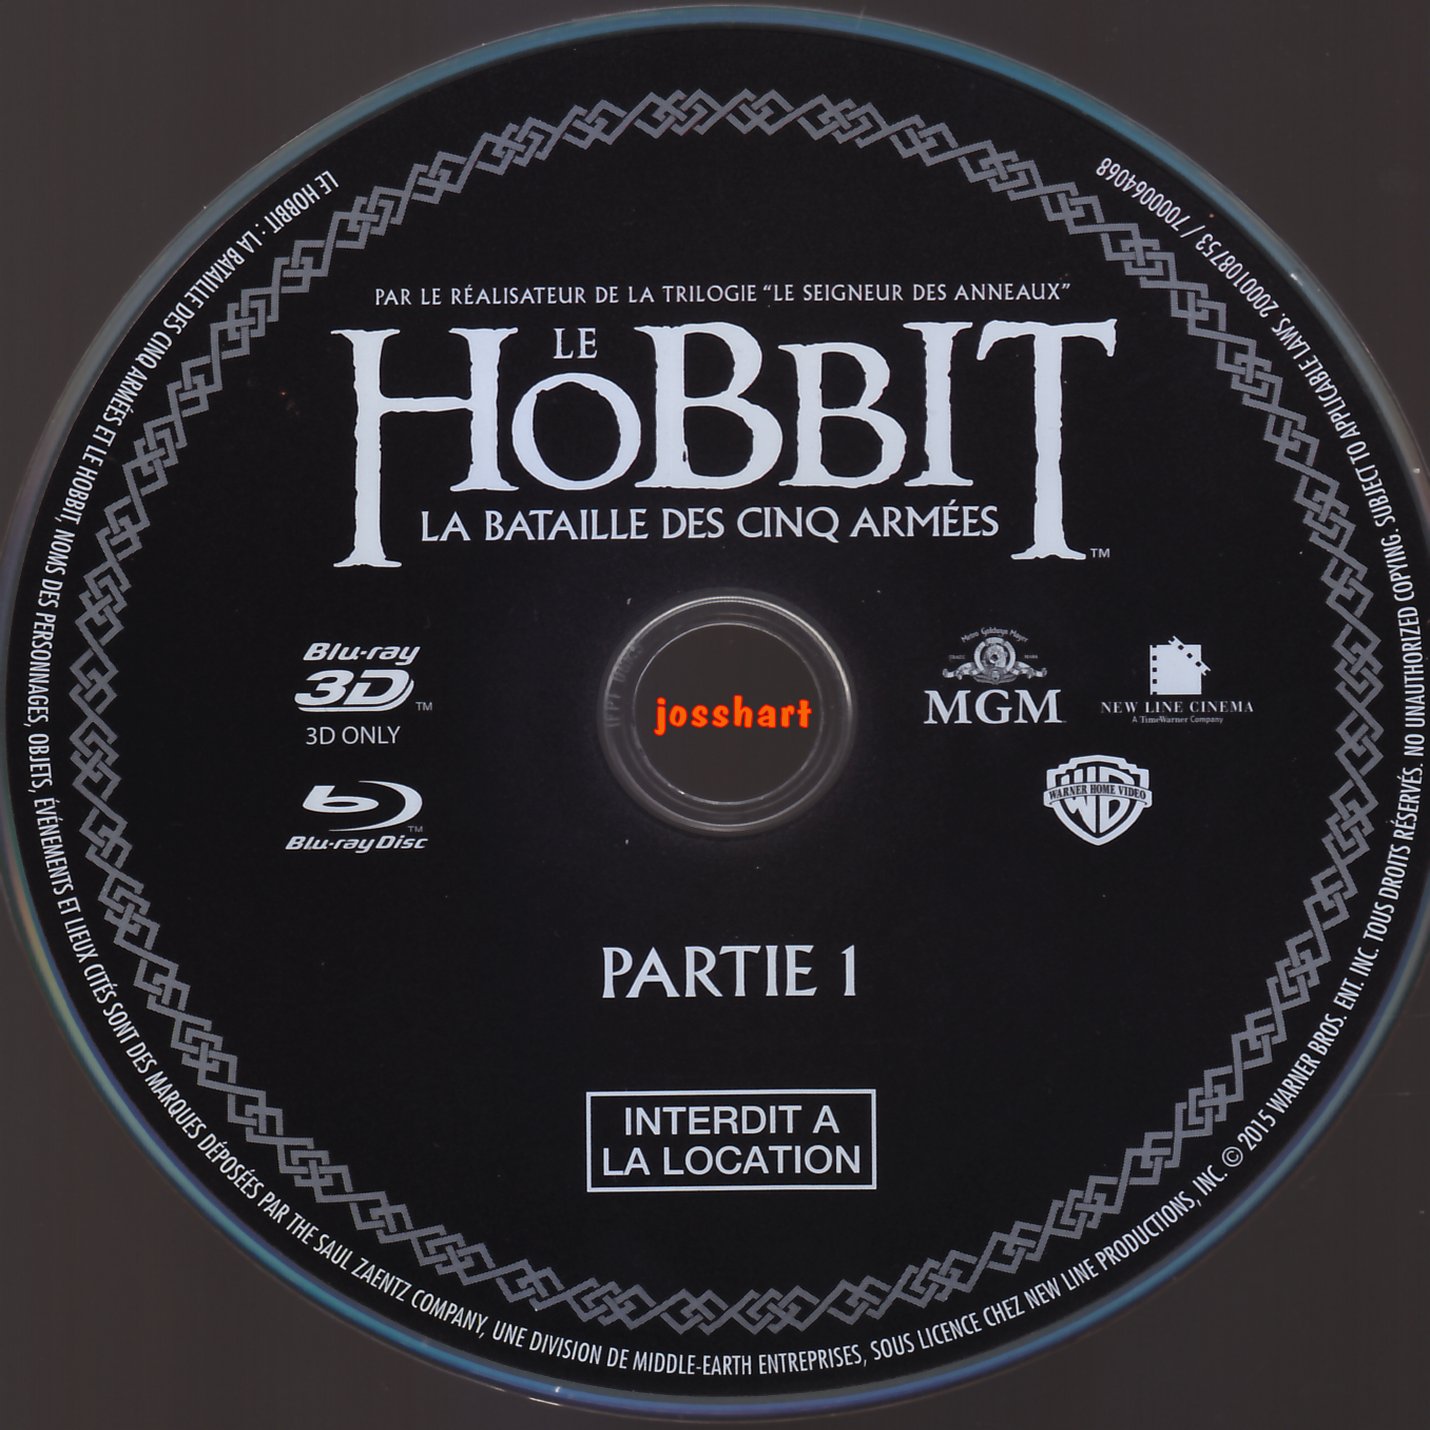 Le Hobbit la Bataille des Cinq Armes Partie 1 3D (BLU-RAY)